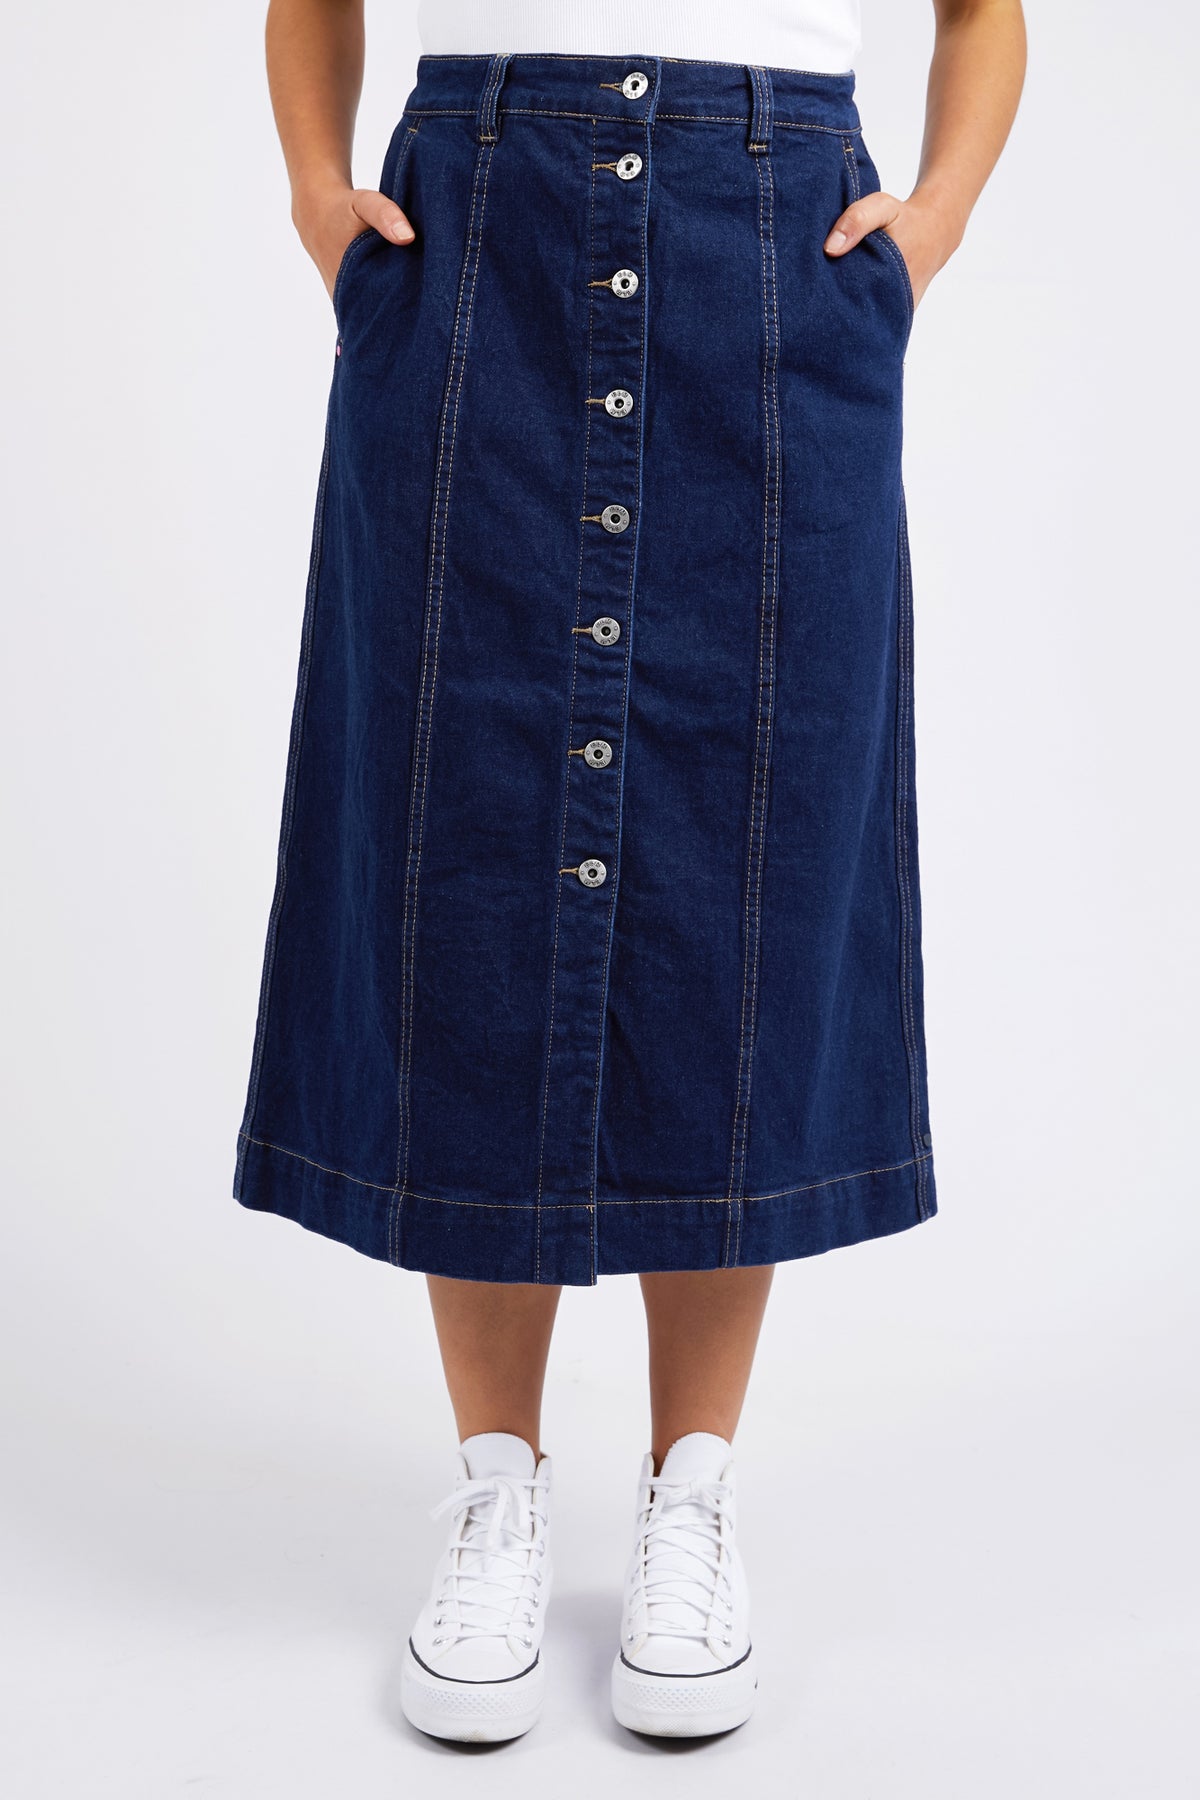 Florence Button Through Skirt Dark Blue Wash